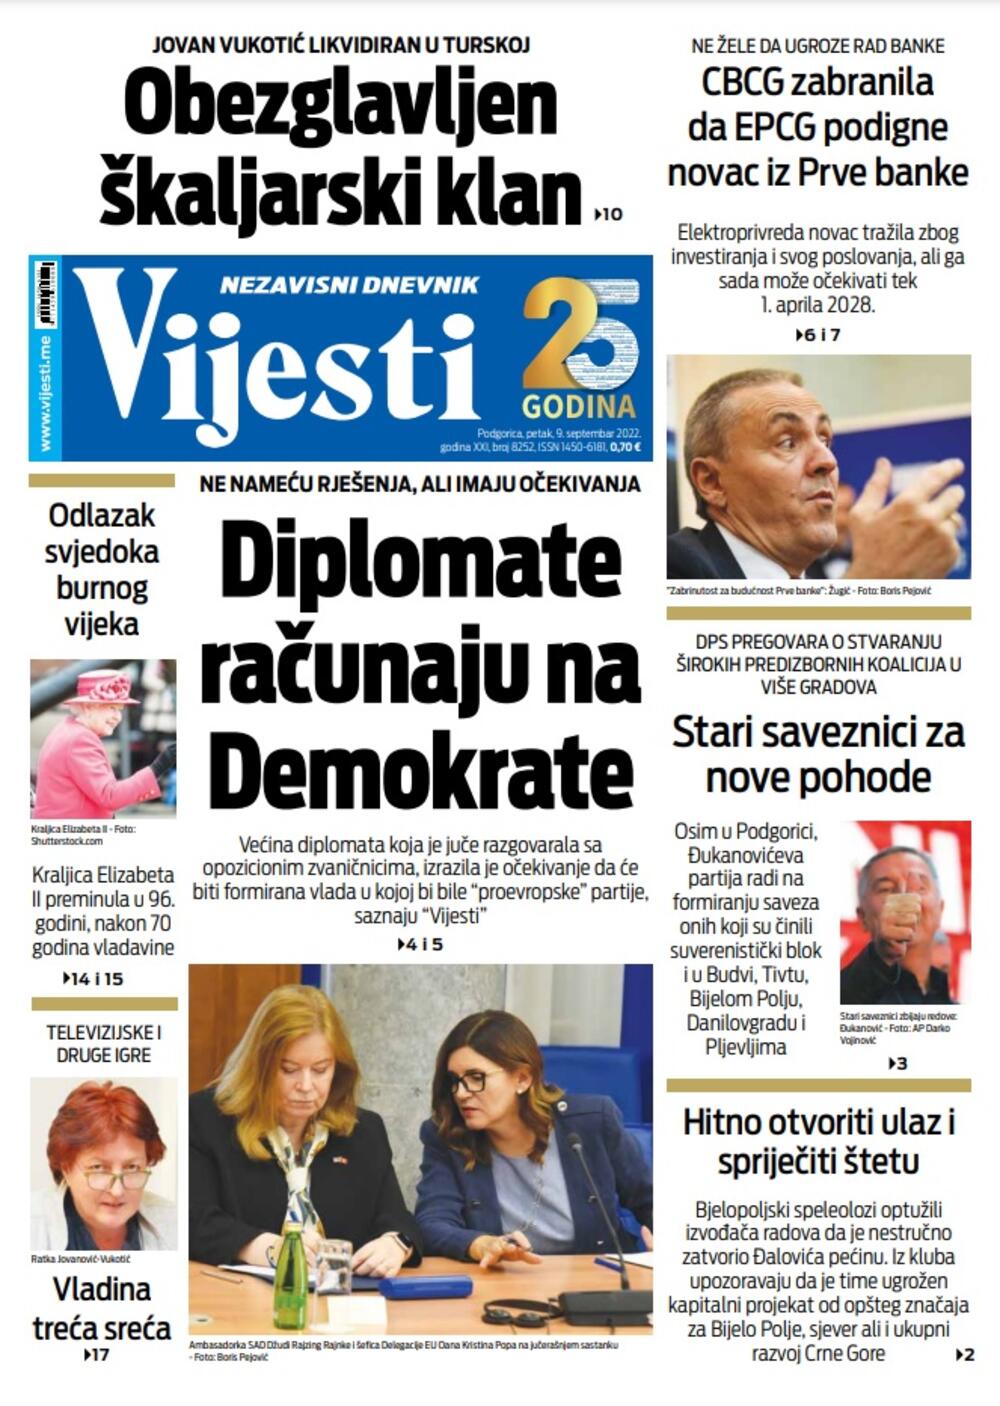 Naslovna strana "Vijesti" za 9. septembar 2022. godine, Foto: Vijesti